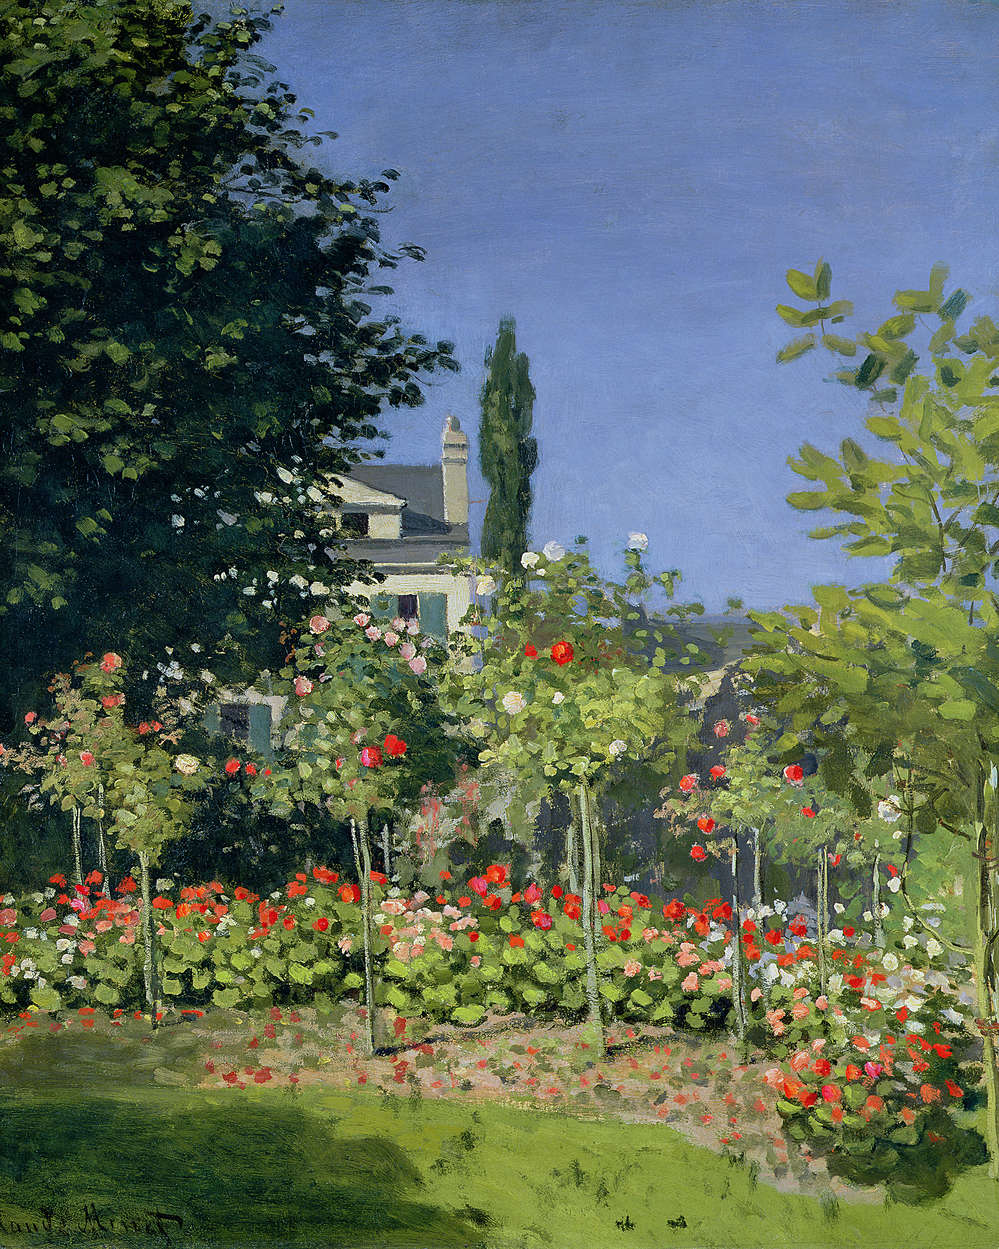             Fototapete "Blühender Garten in Sainte Adresse" von Claude Monet
        